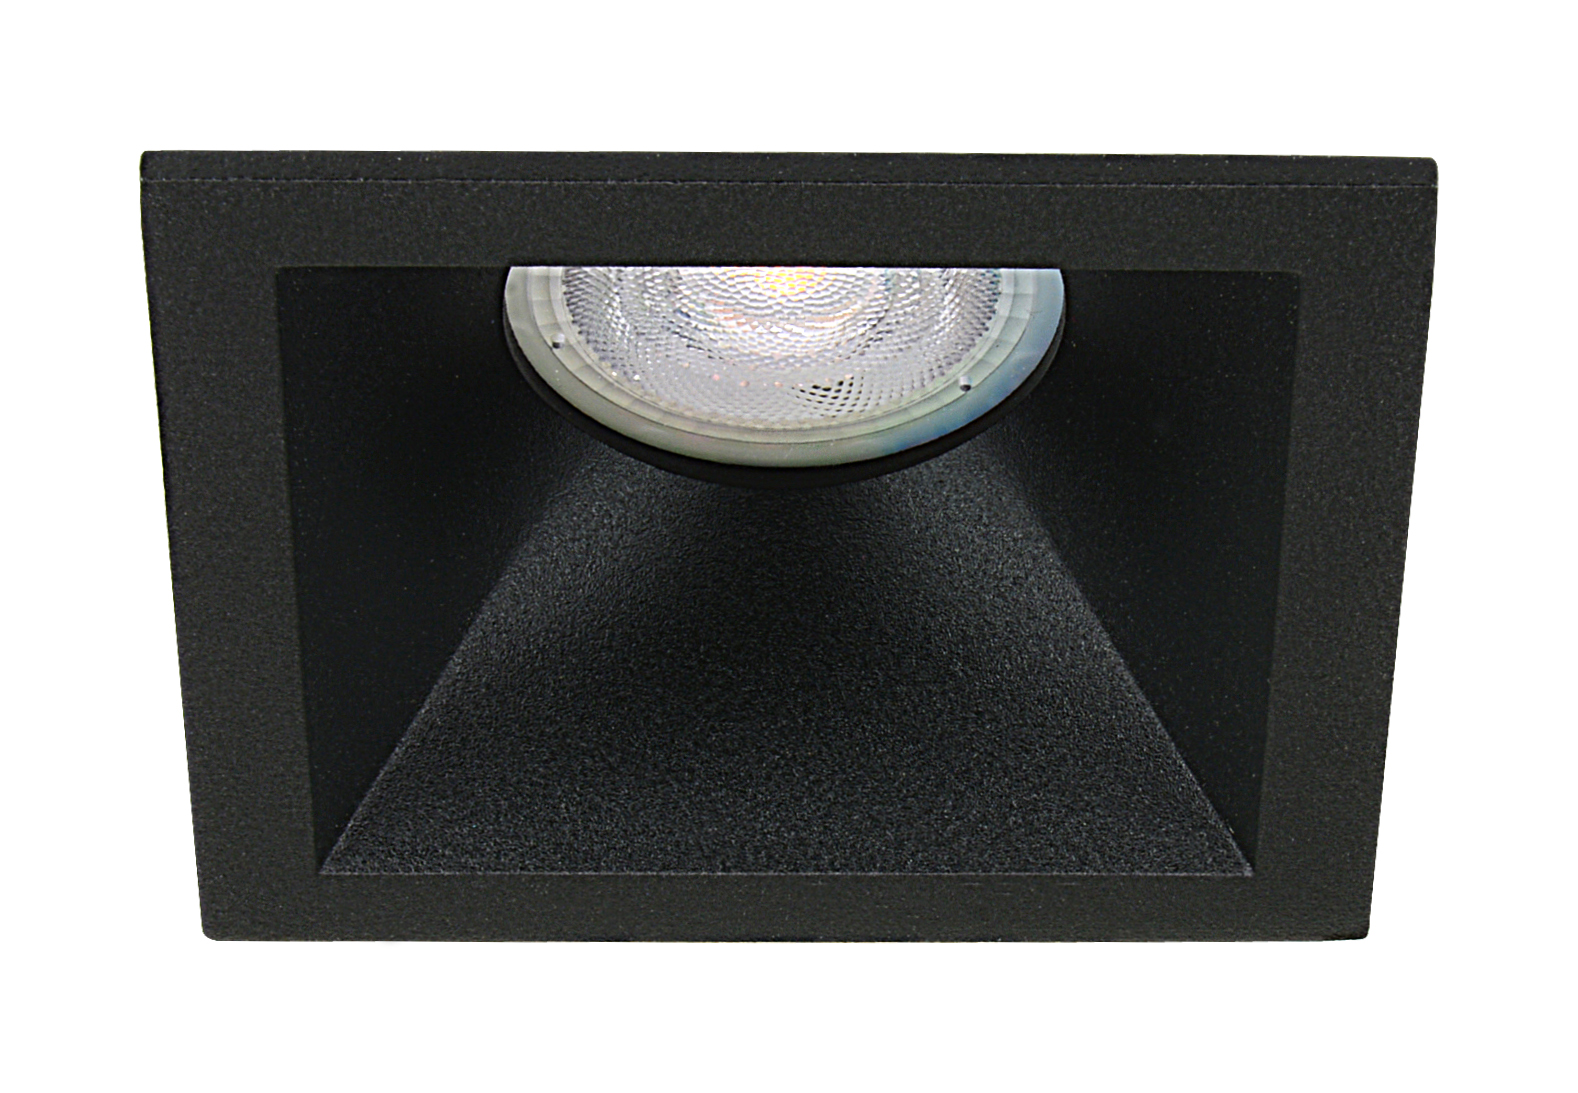 LED inbouwspot Liam -Verdiept Zwart -Extra Warm Wit -Dimbaar -4W -Philips LED